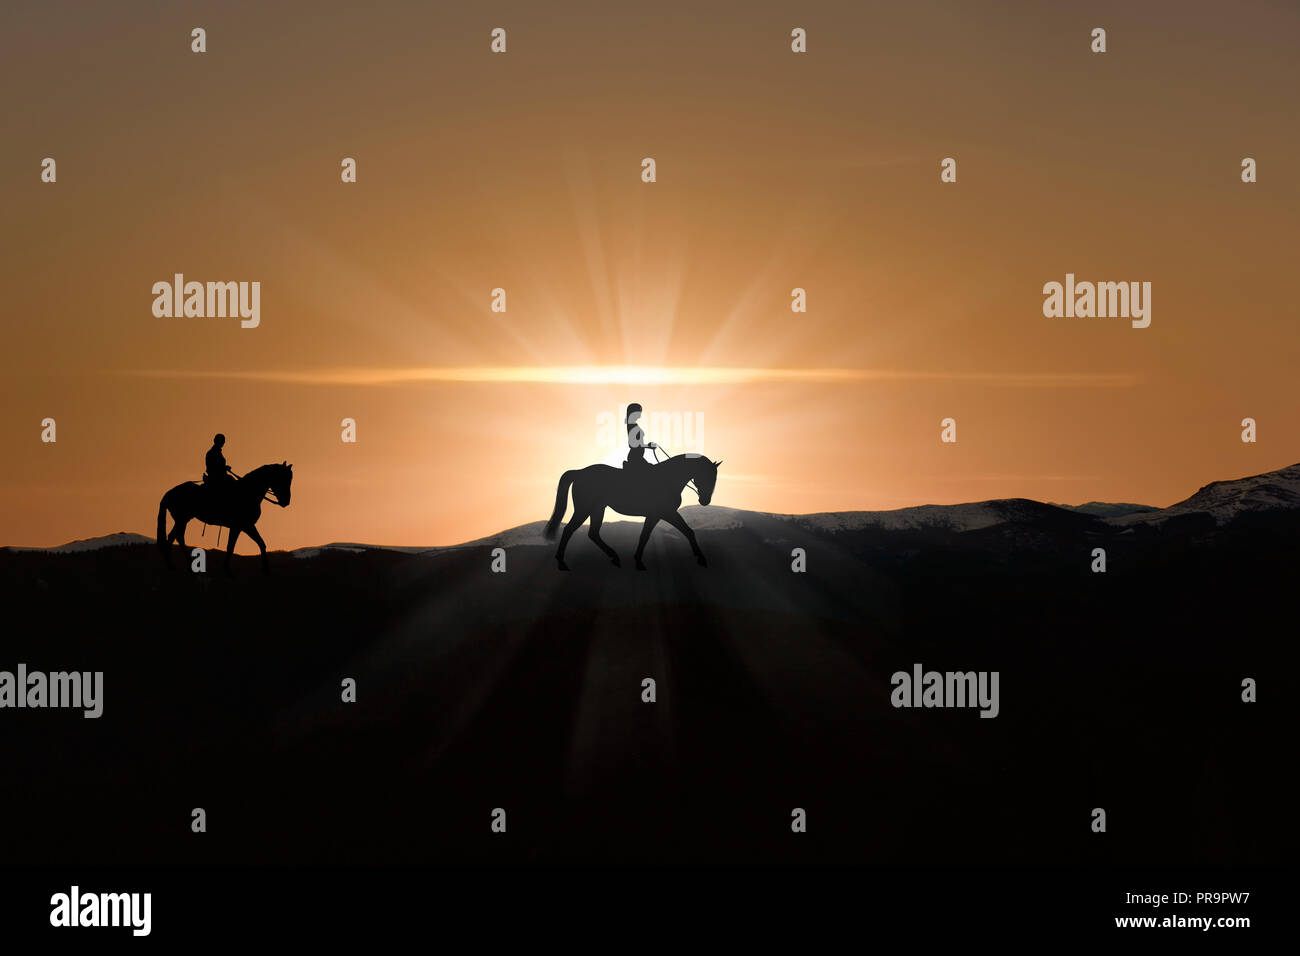 Silhouette of man and woman riding horse sur horizon comme le soleil se couche Banque D'Images